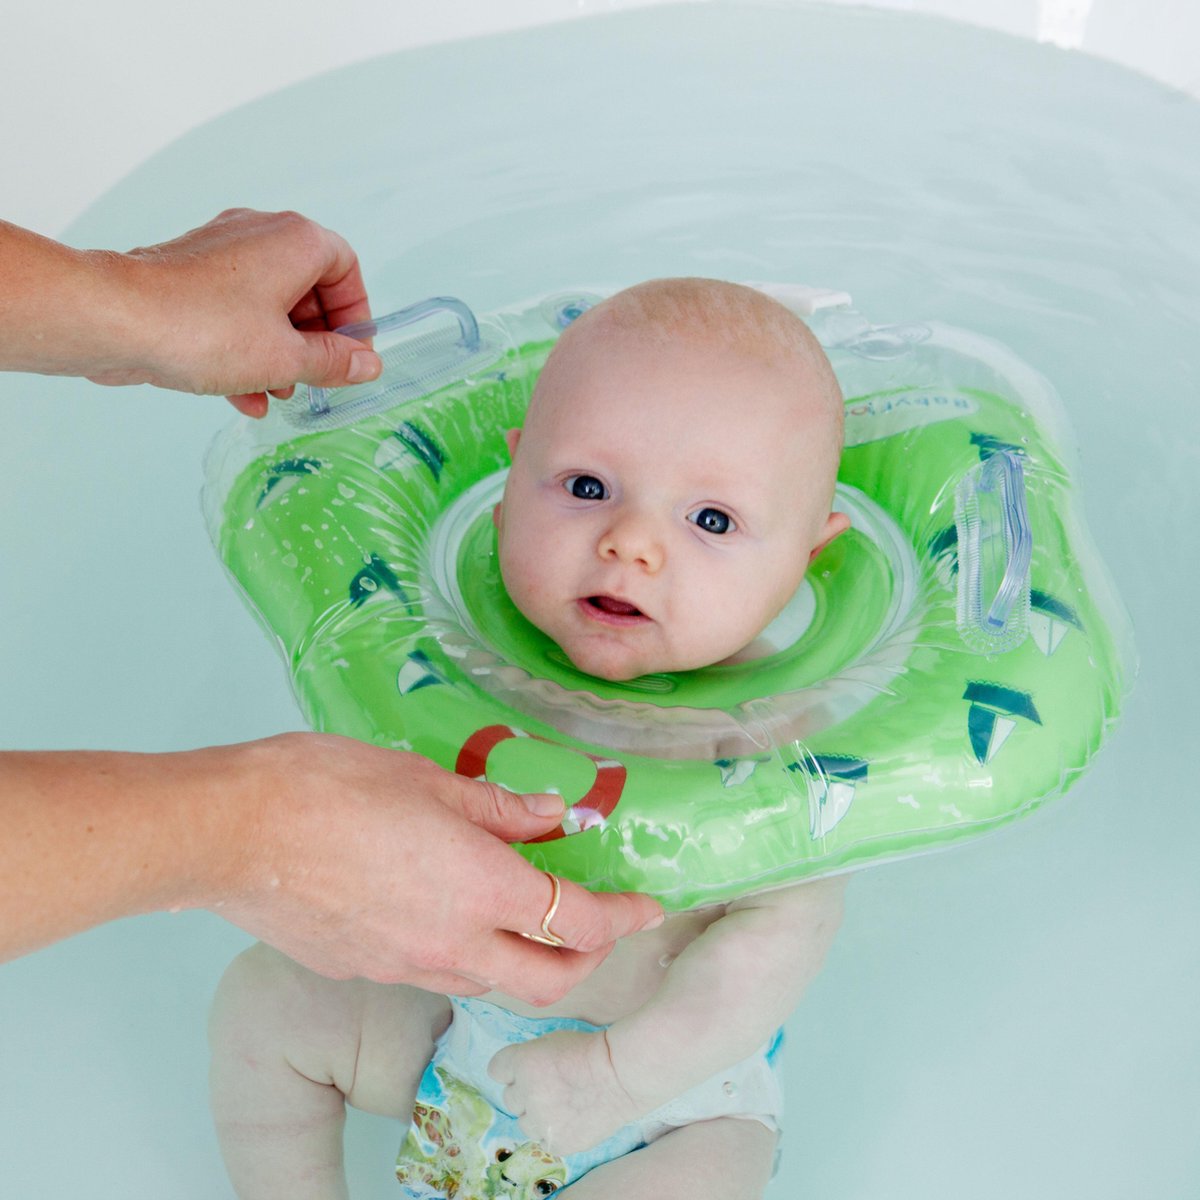 BabyFloat ® - CE Goedgekeurde Zwemband Baby Nek - Baby Swimmer - Groen |  bol.com